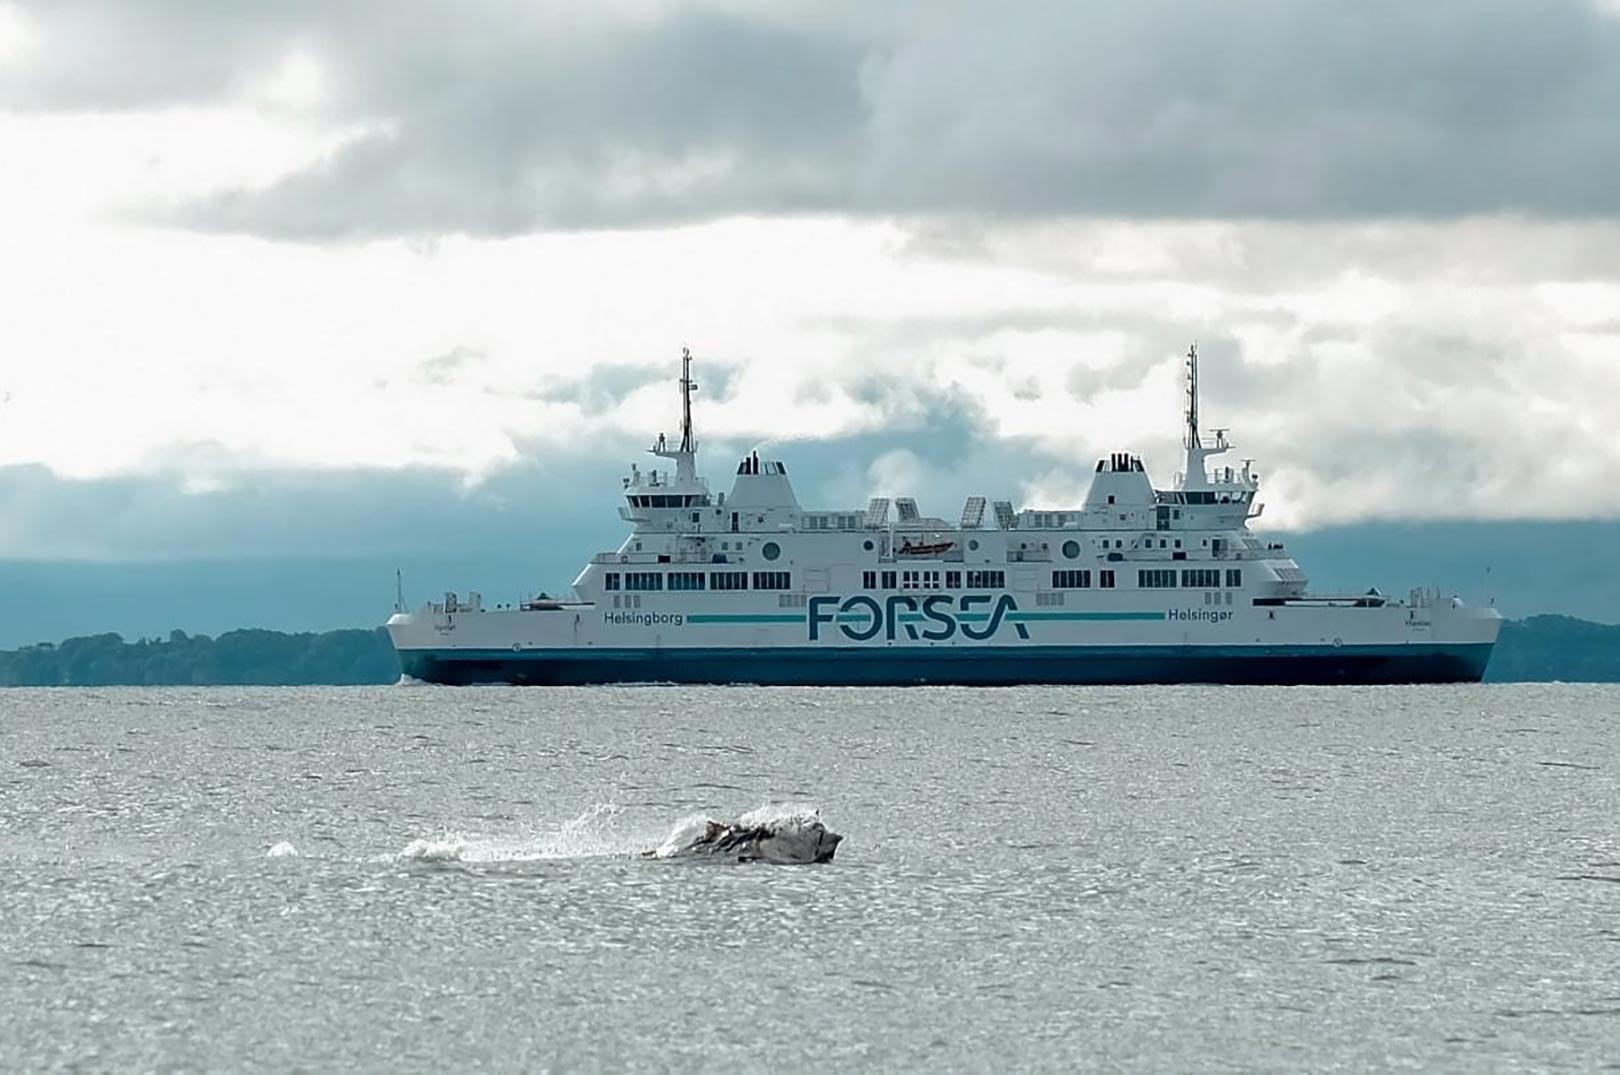 Ole Thomsen var hurtig med kameraet da denne flotte tun sprang fri af vandet i Øresund.